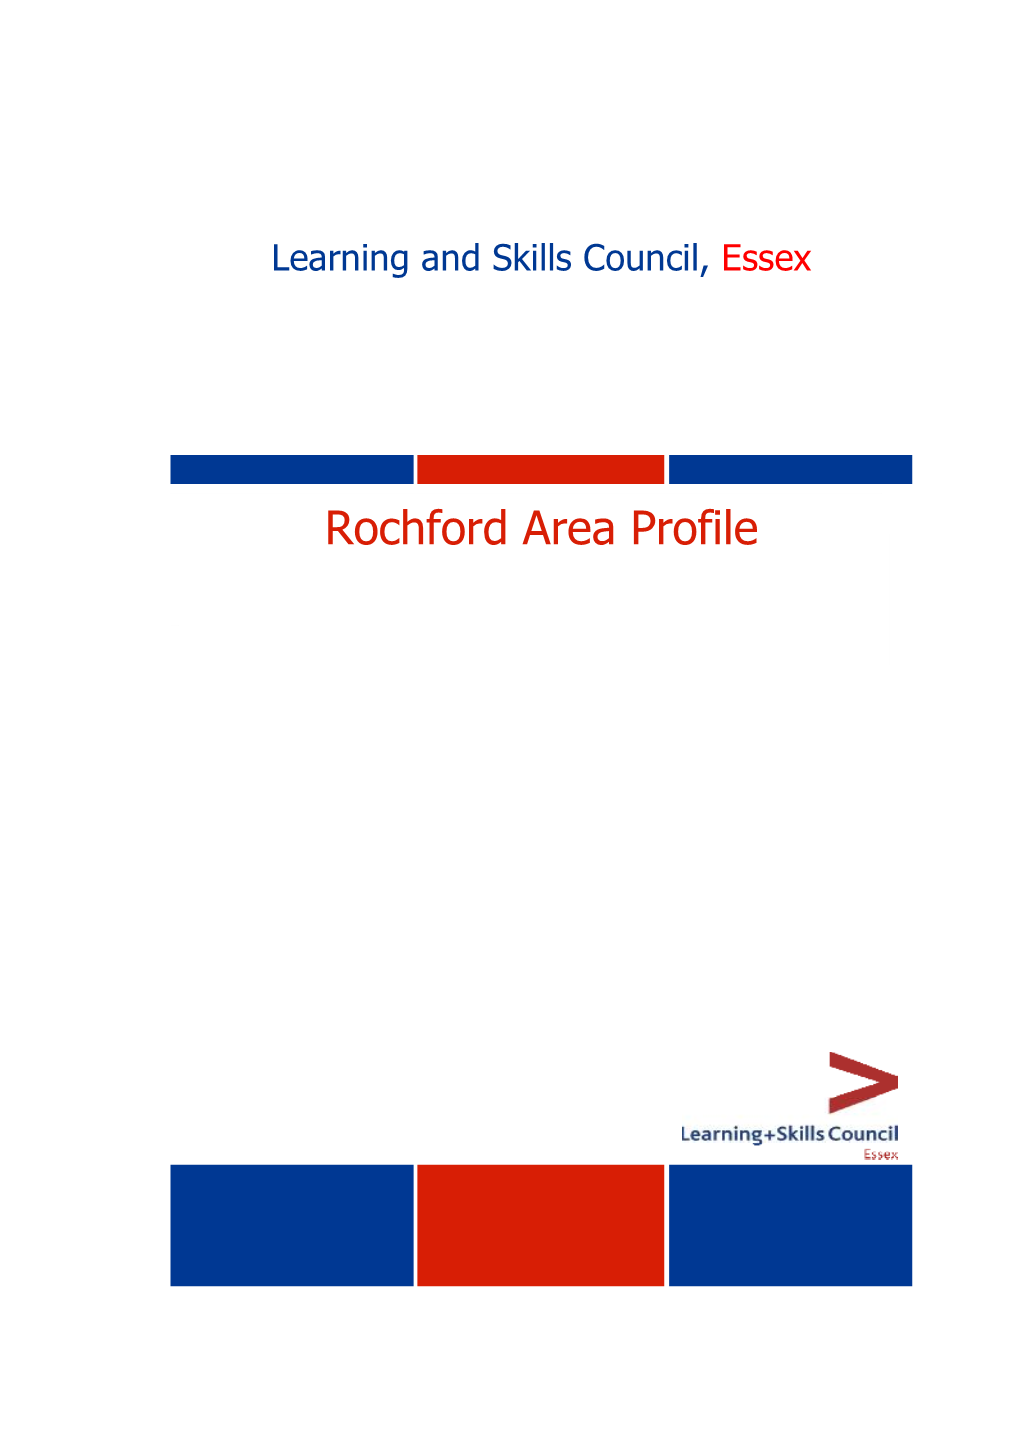 Rochford Area Profile 2003